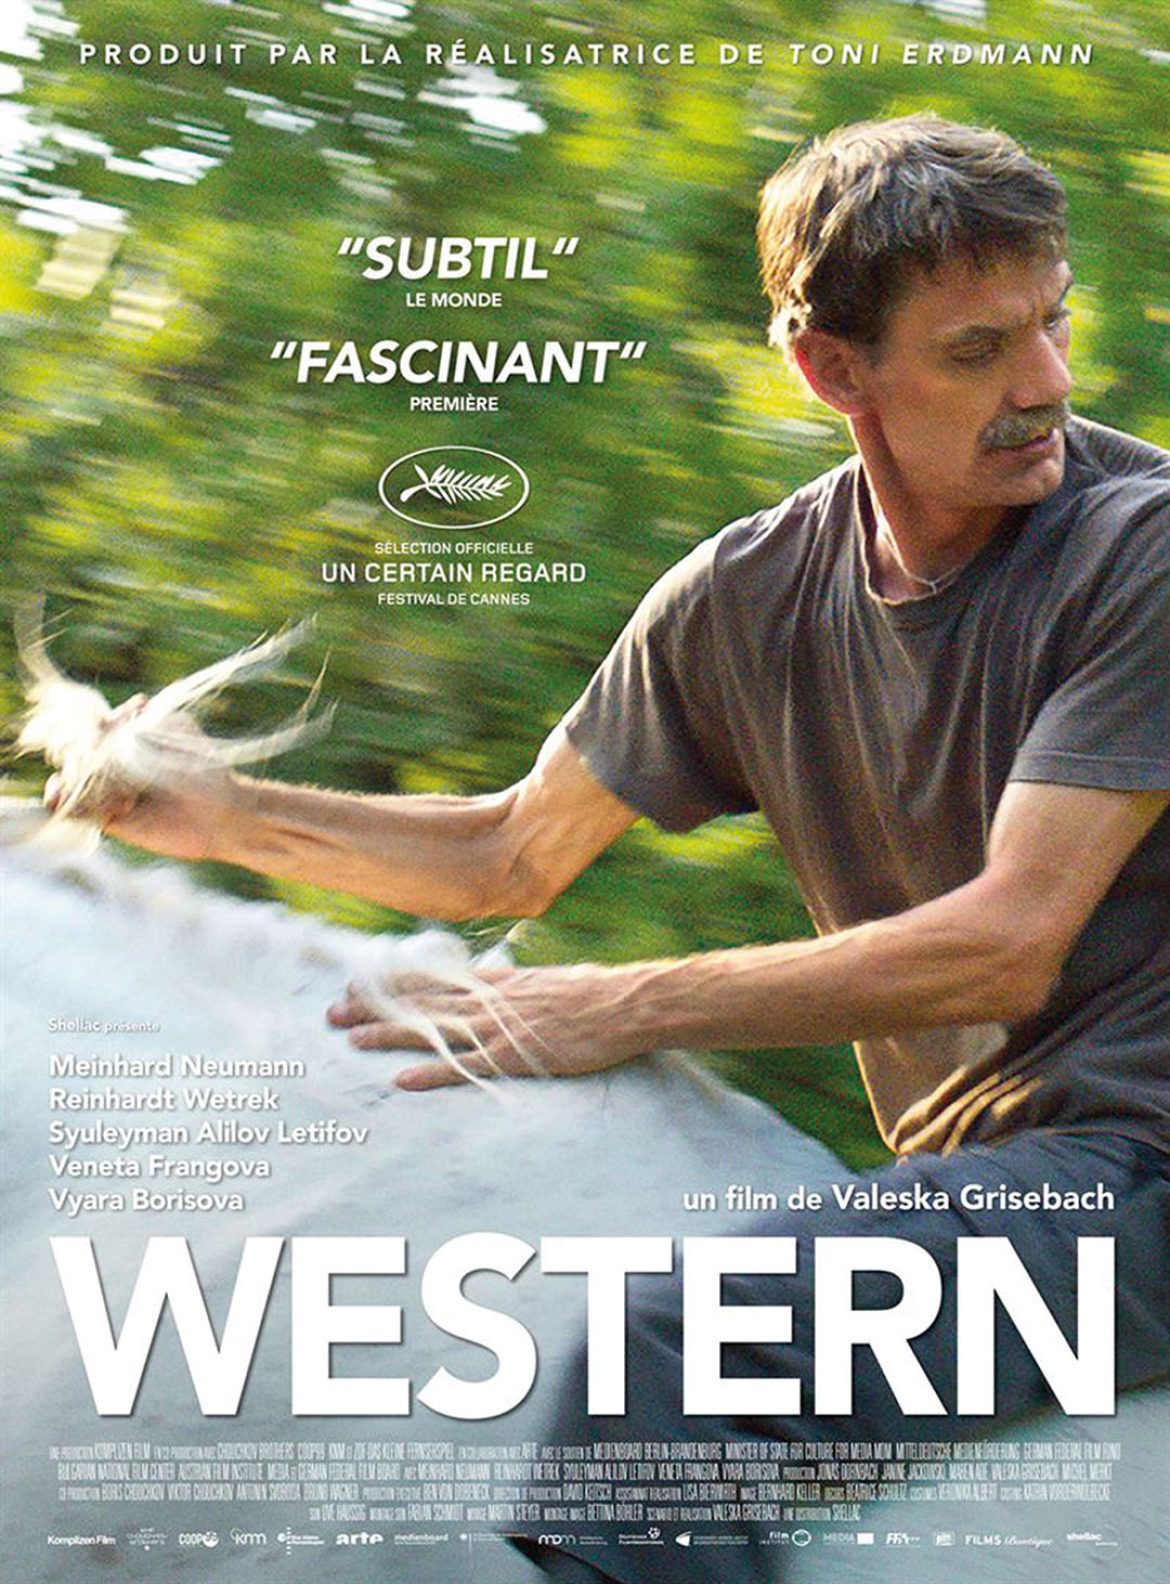 LES FILMS DU SUD présentent : Western (VOst)